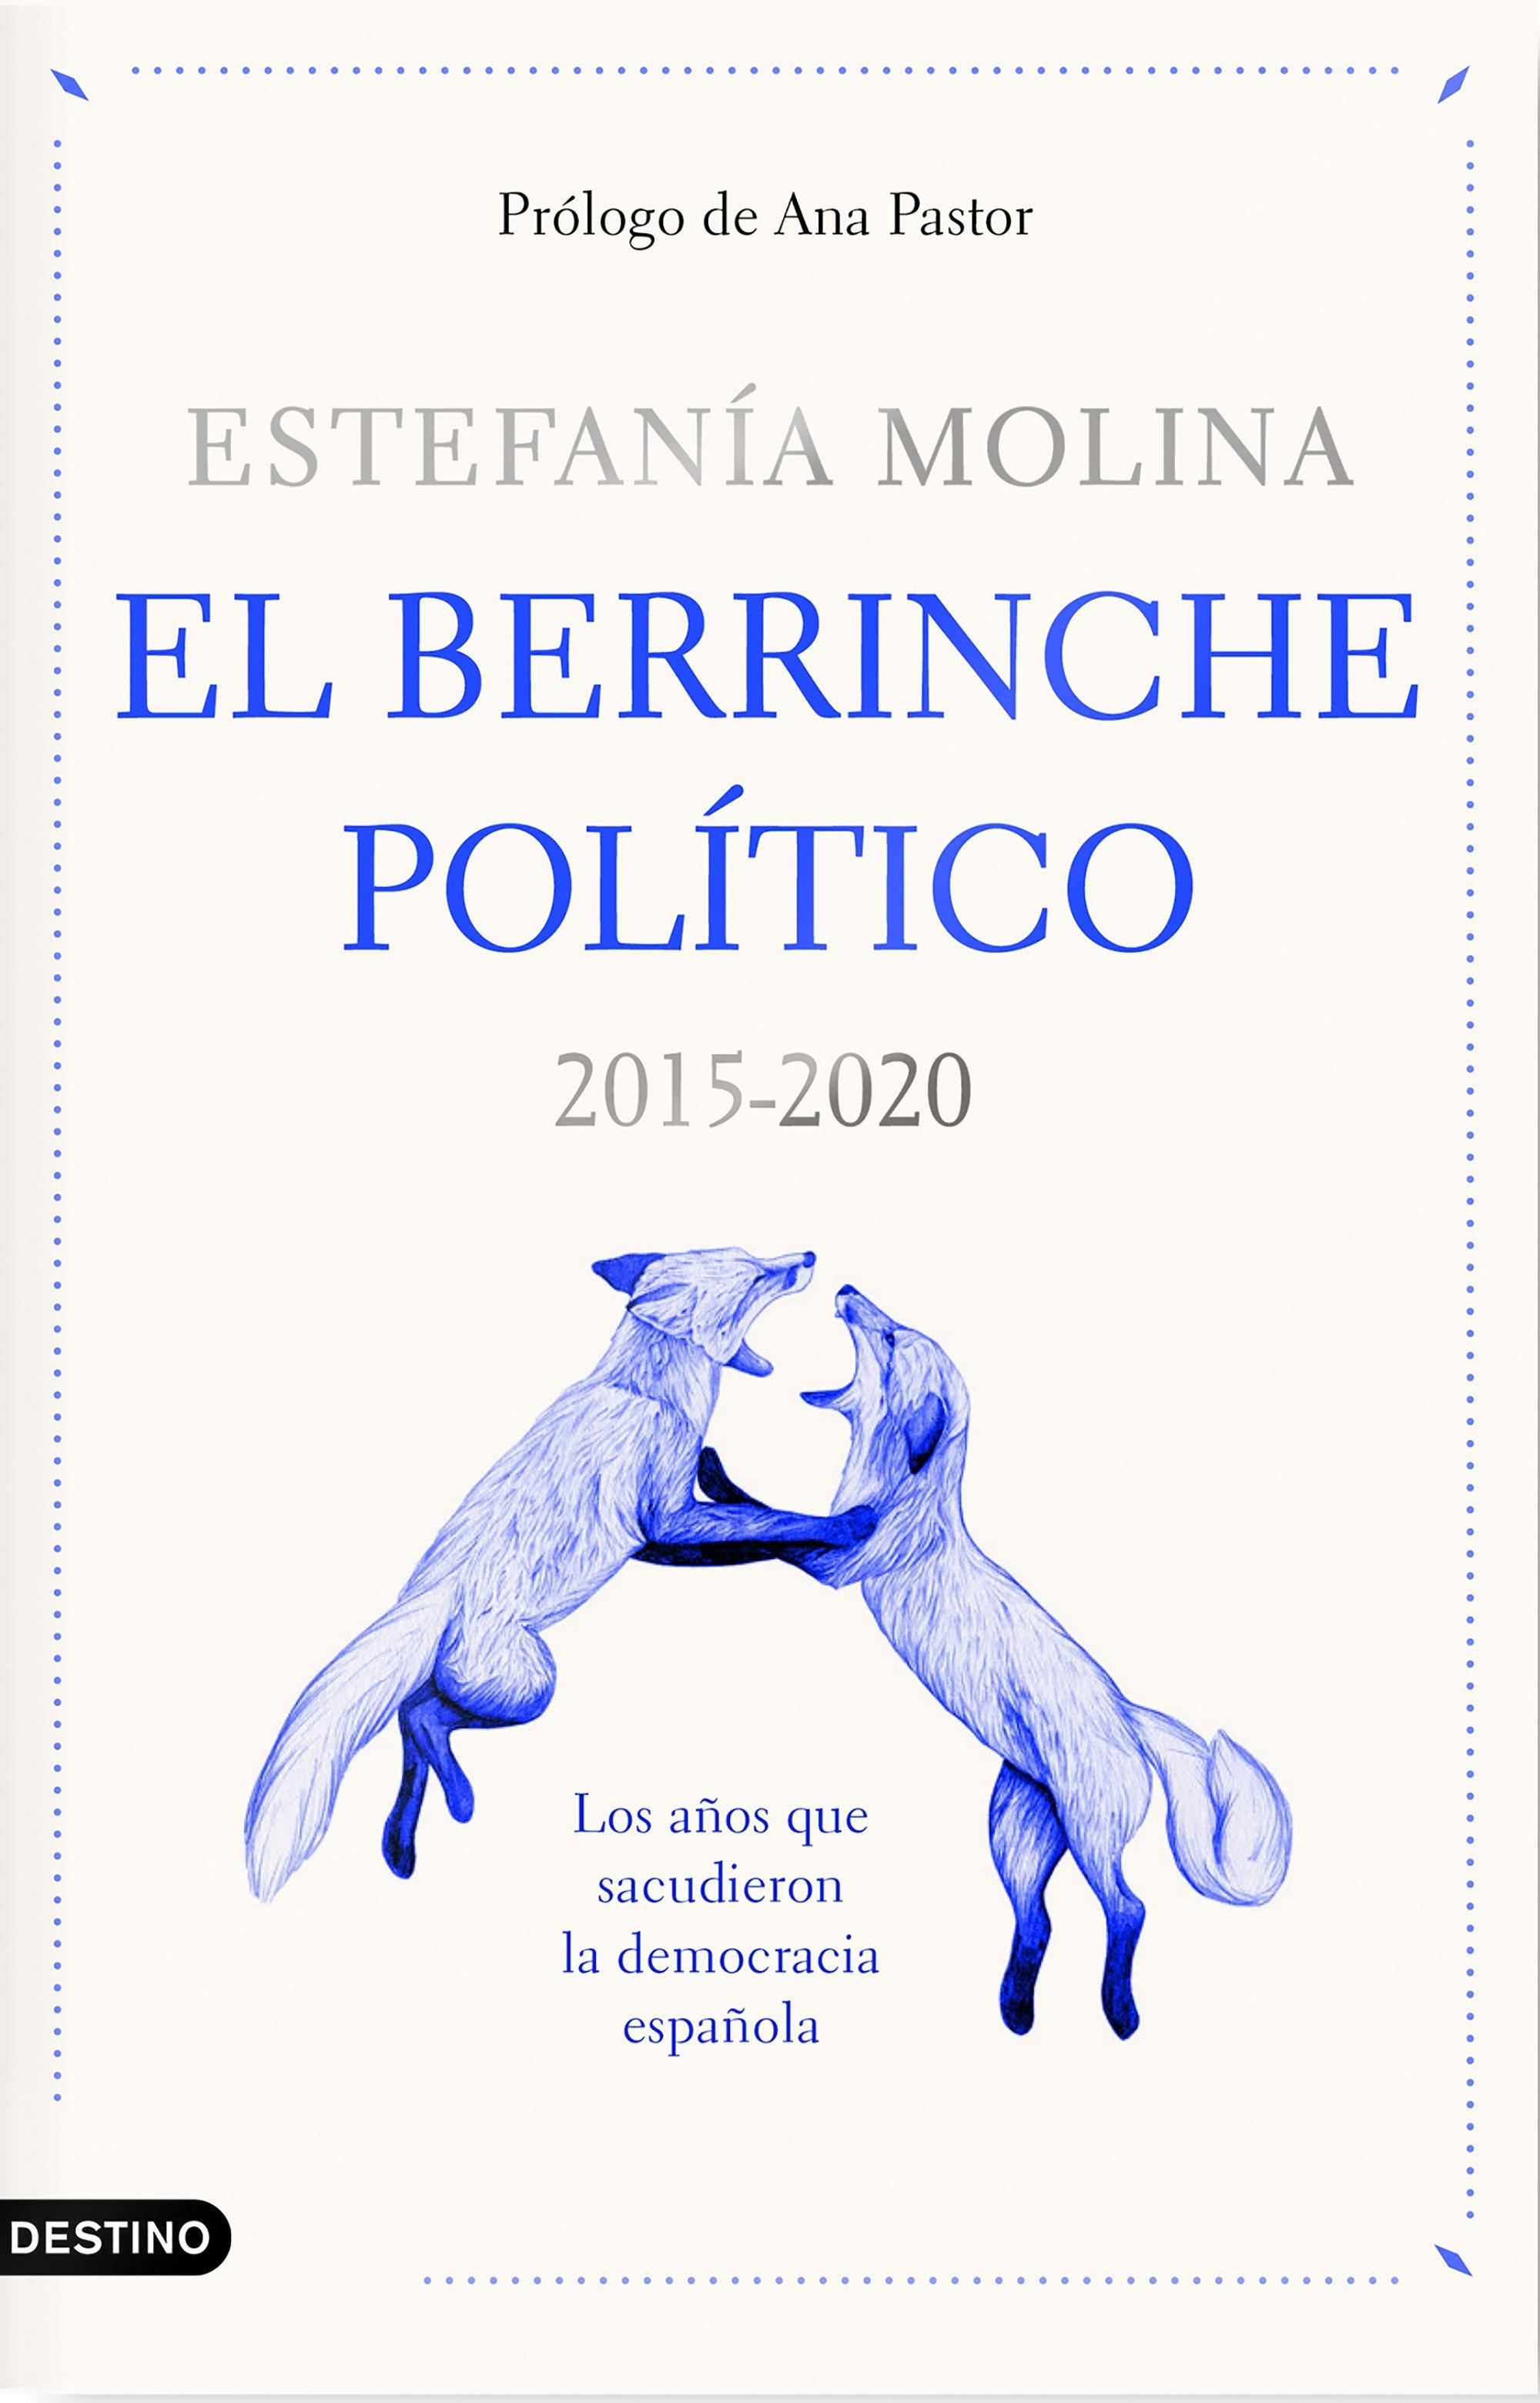 El Berrinche Político "2015-2020 los Años que Sacudieron la Democracia Española"